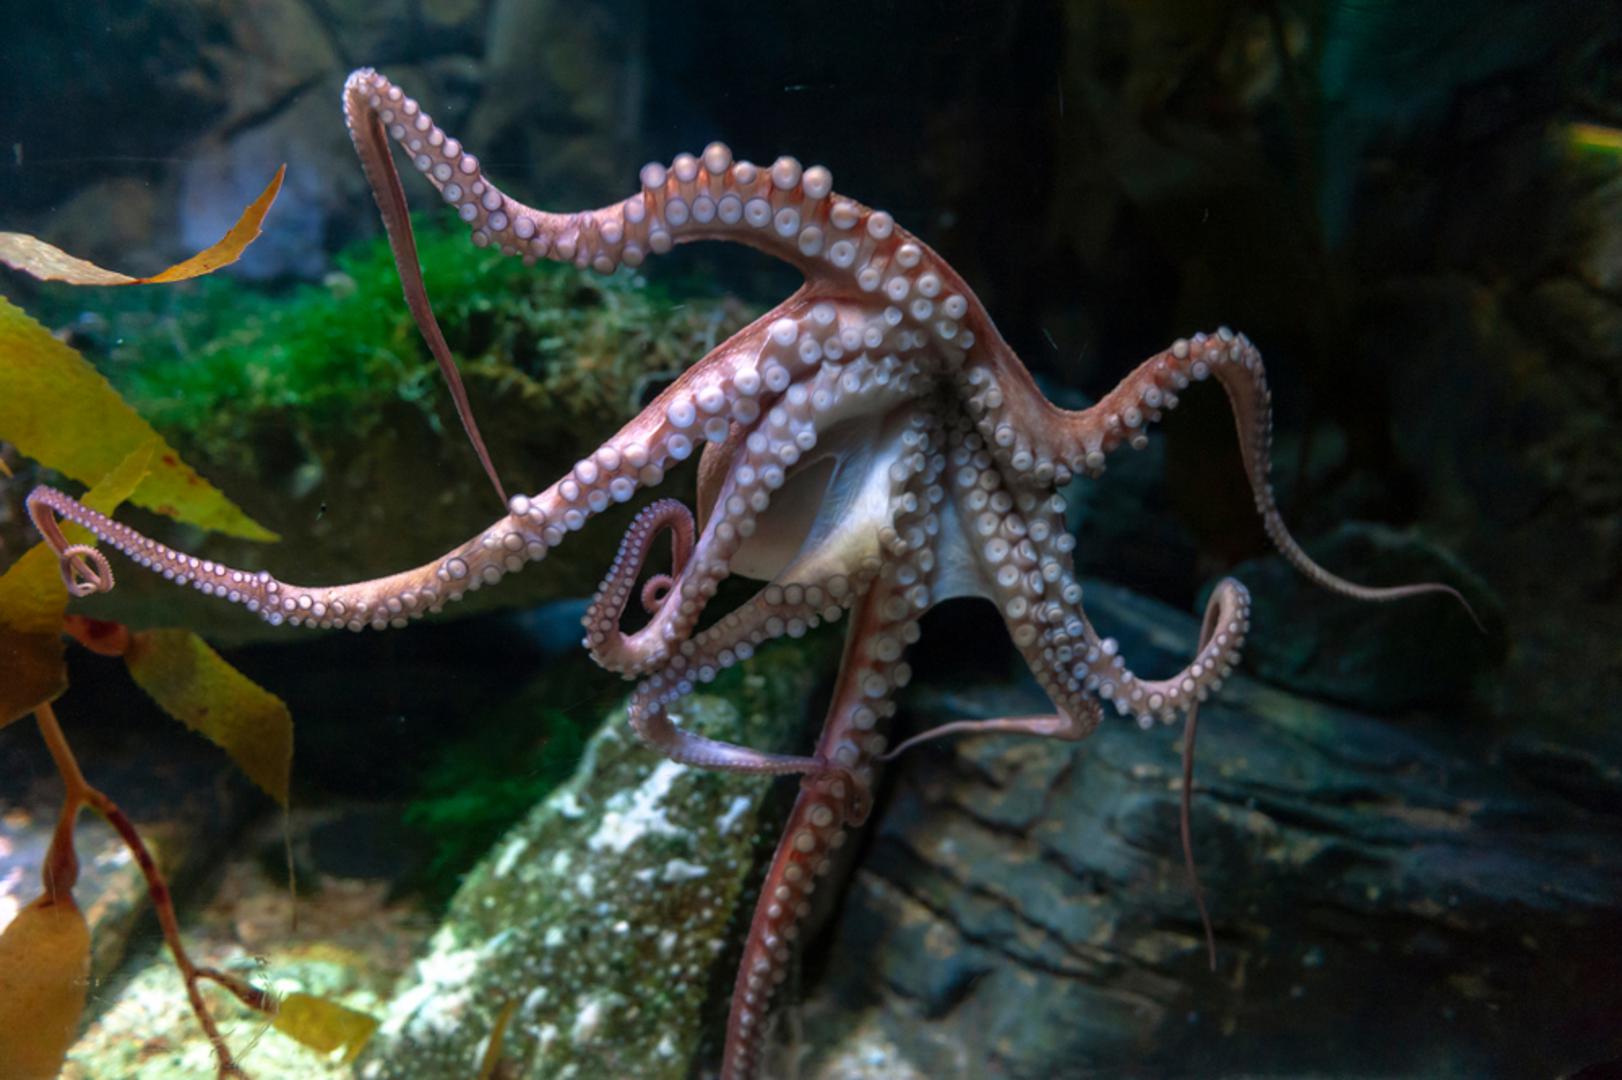 Hobotnica: Hobotnice su vrlo pametne i svjesne svoje okoline, tvrde znanstvenici. Većina riba i drugih vodenih stvorenja u akvariju neće shvatiti da se nalazi u neprirodnom okruženju, no hobotnicu ne možete prevariti i ona će često pronaći način da iz akvarija pobjegne.